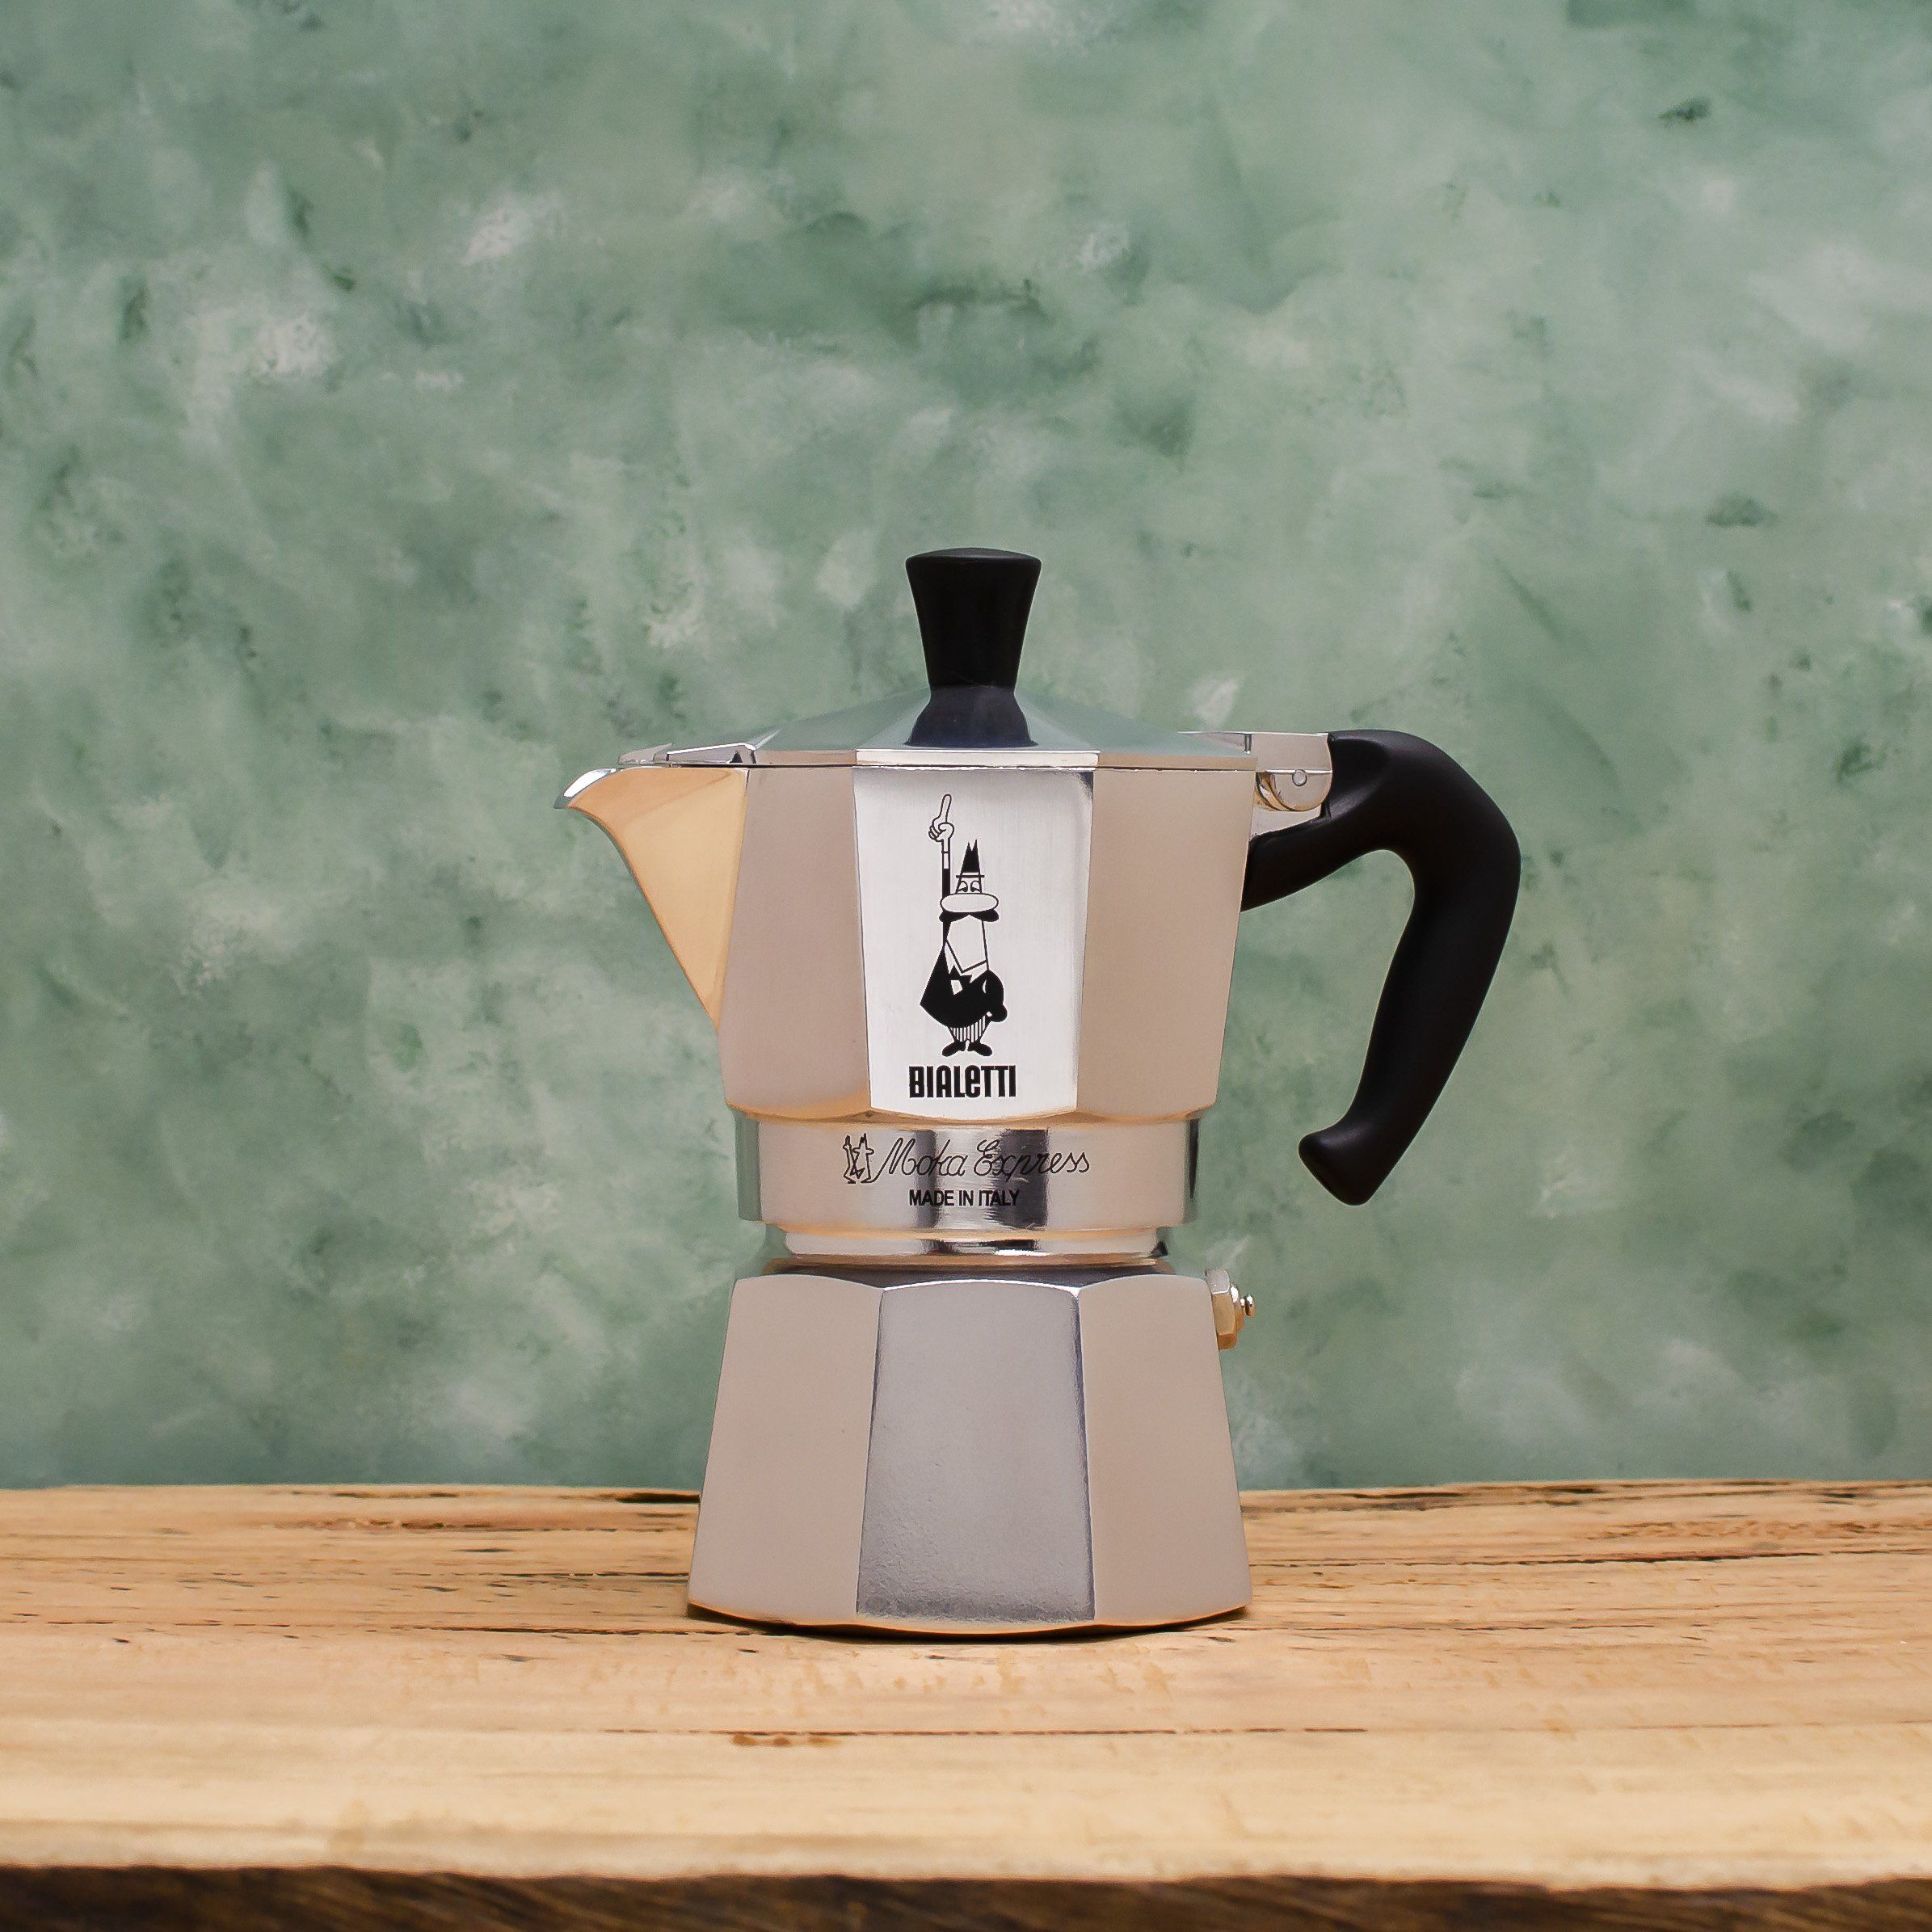 https://www.coffeacoffee.com.au/cdn/shop/products/Bialetti_Moka_Express_3_cup.jpg?v=1613380997